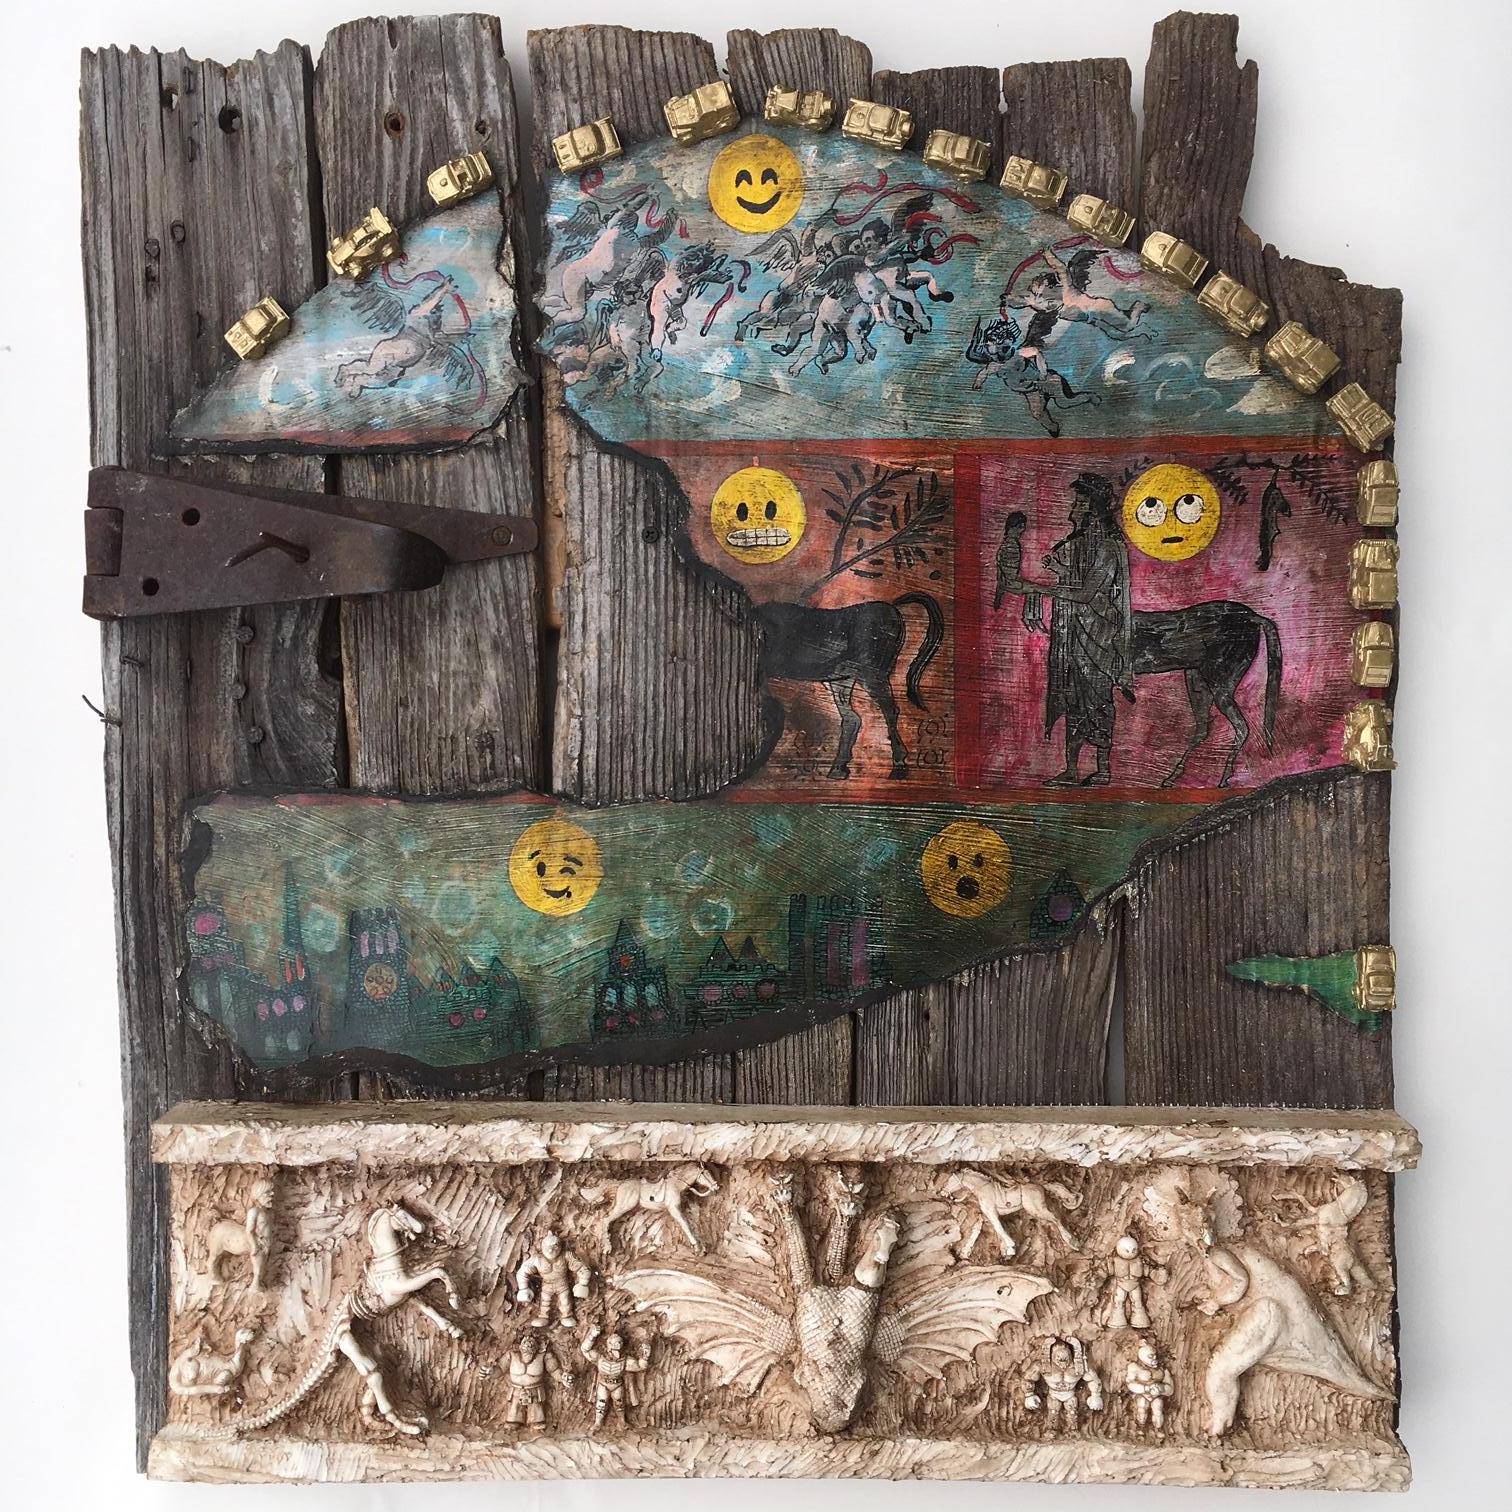 Peinture et sculpture sur une ancienne porte de grange : "The Riddle of the Horse" (L'énigme du cheval) - Mixed Media Art de Joshua Goode